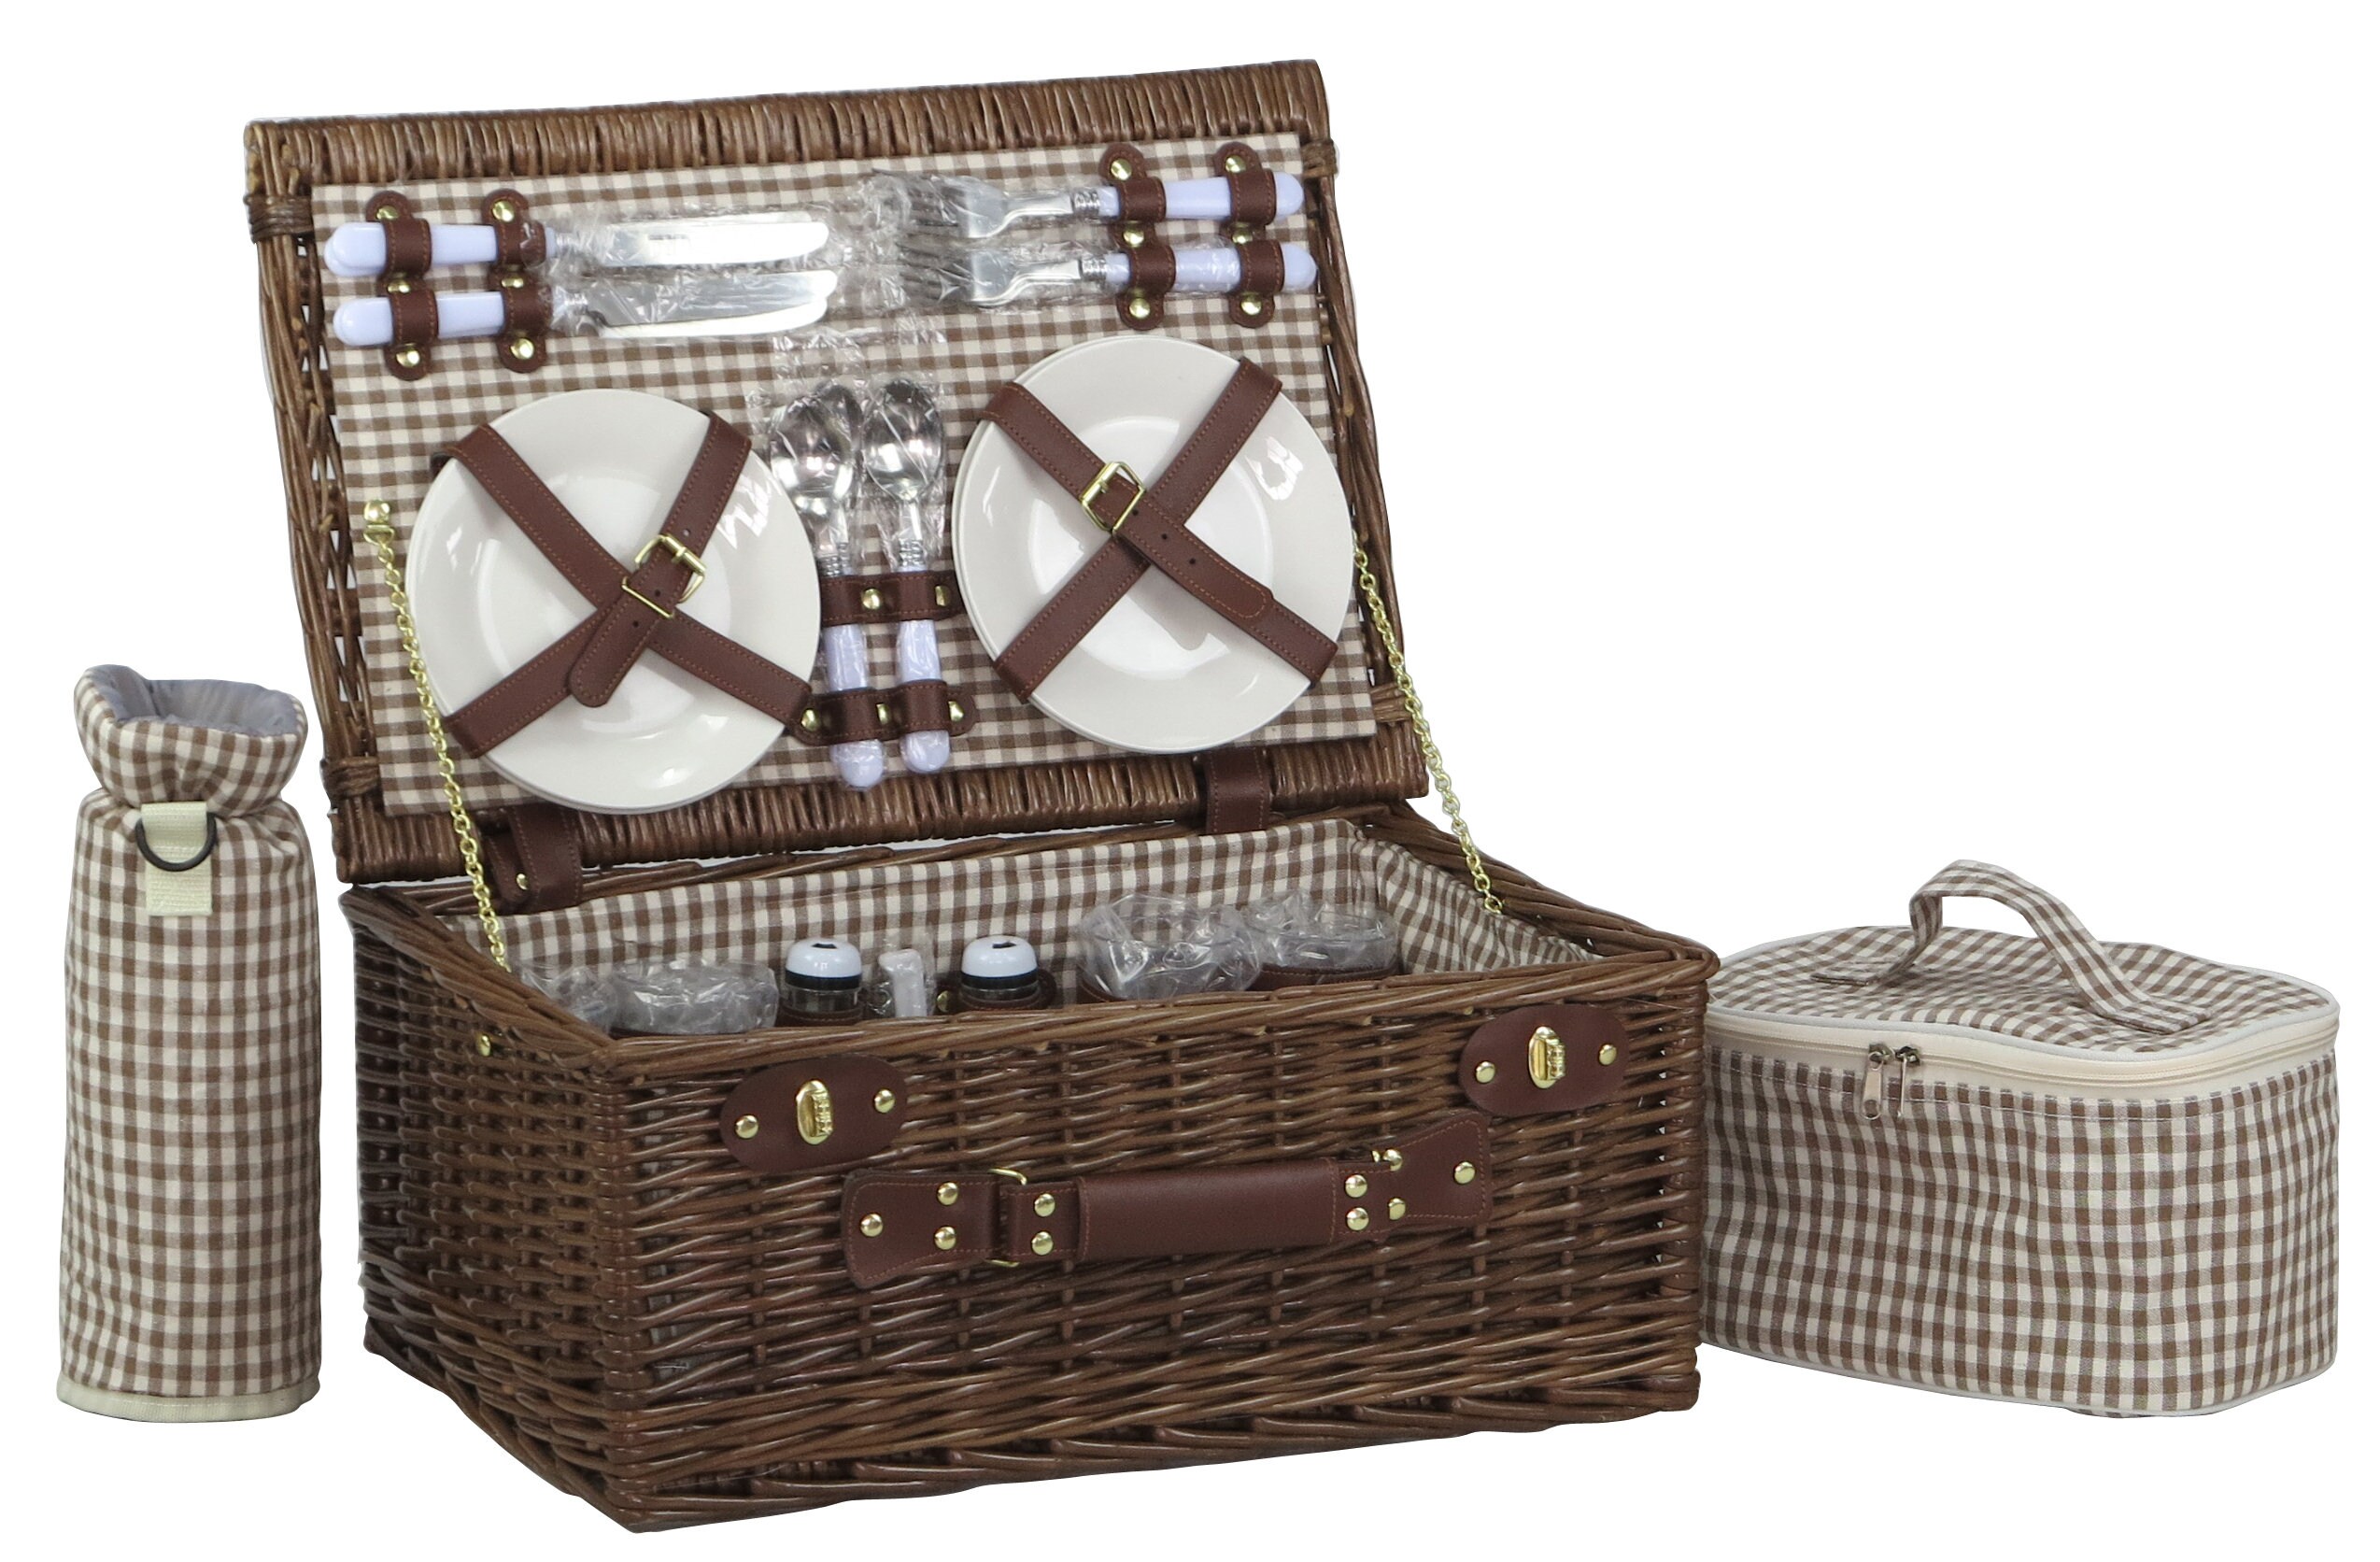 Cesta de picnic de sauce para 4 personas incl. bolsa térmica 48x32 H.22 4x  colores: marrón/gris claro/negro/blanco -  España